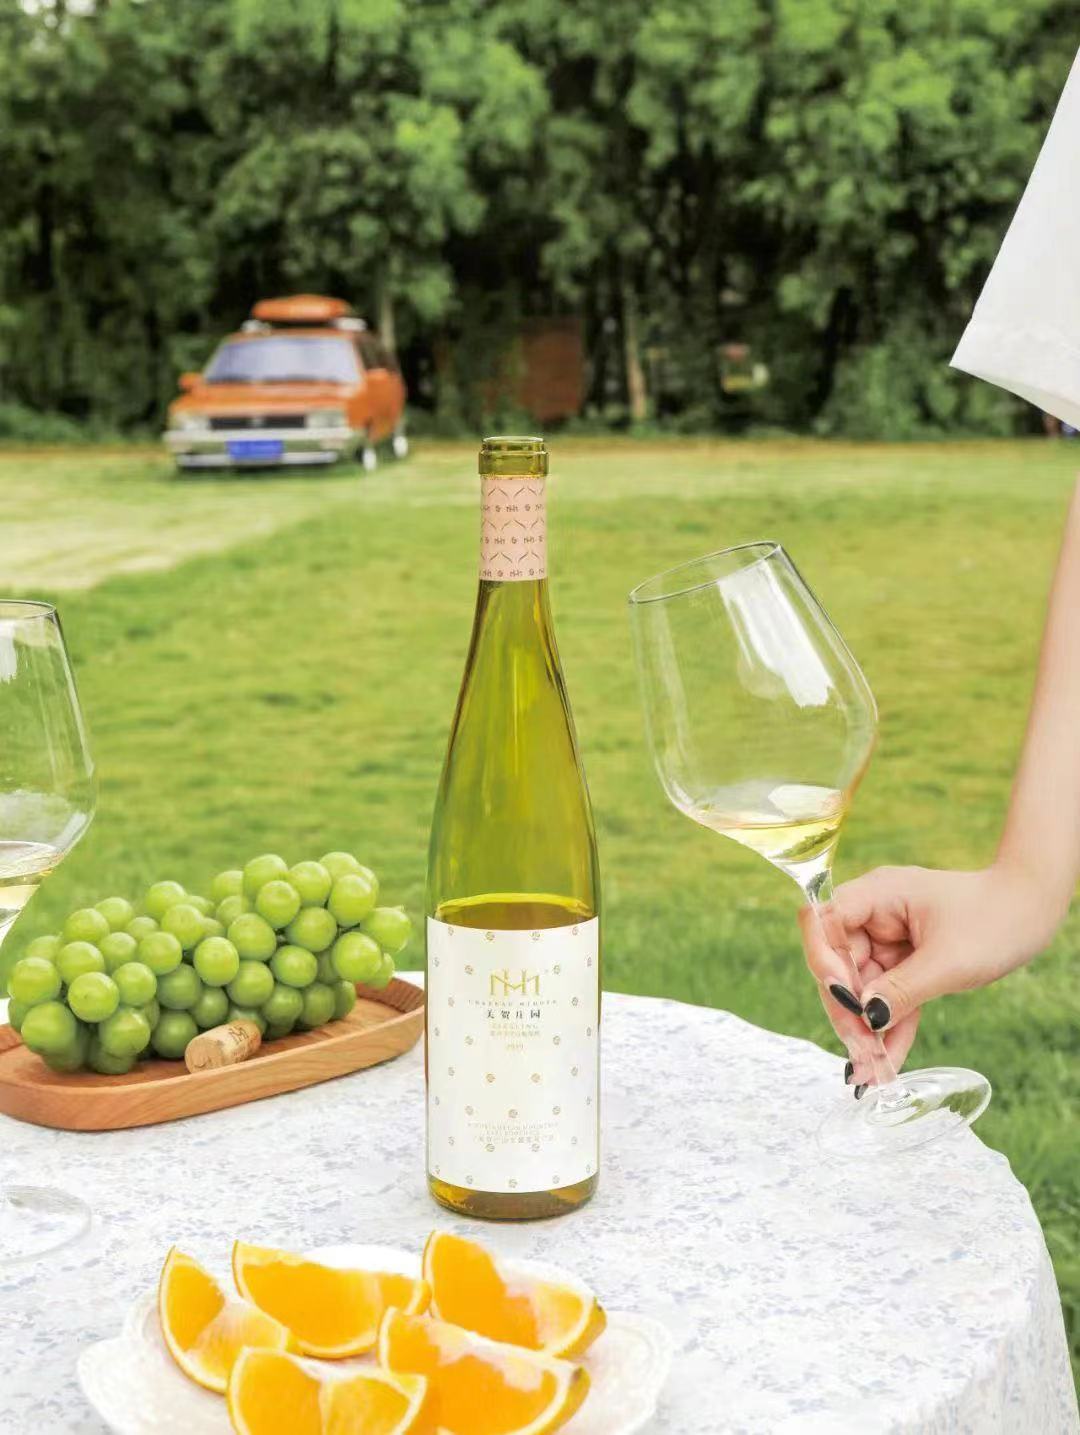 Mihope Riesling Dry White Wine 美賀莊園 雷司令乾白葡萄酒 2019